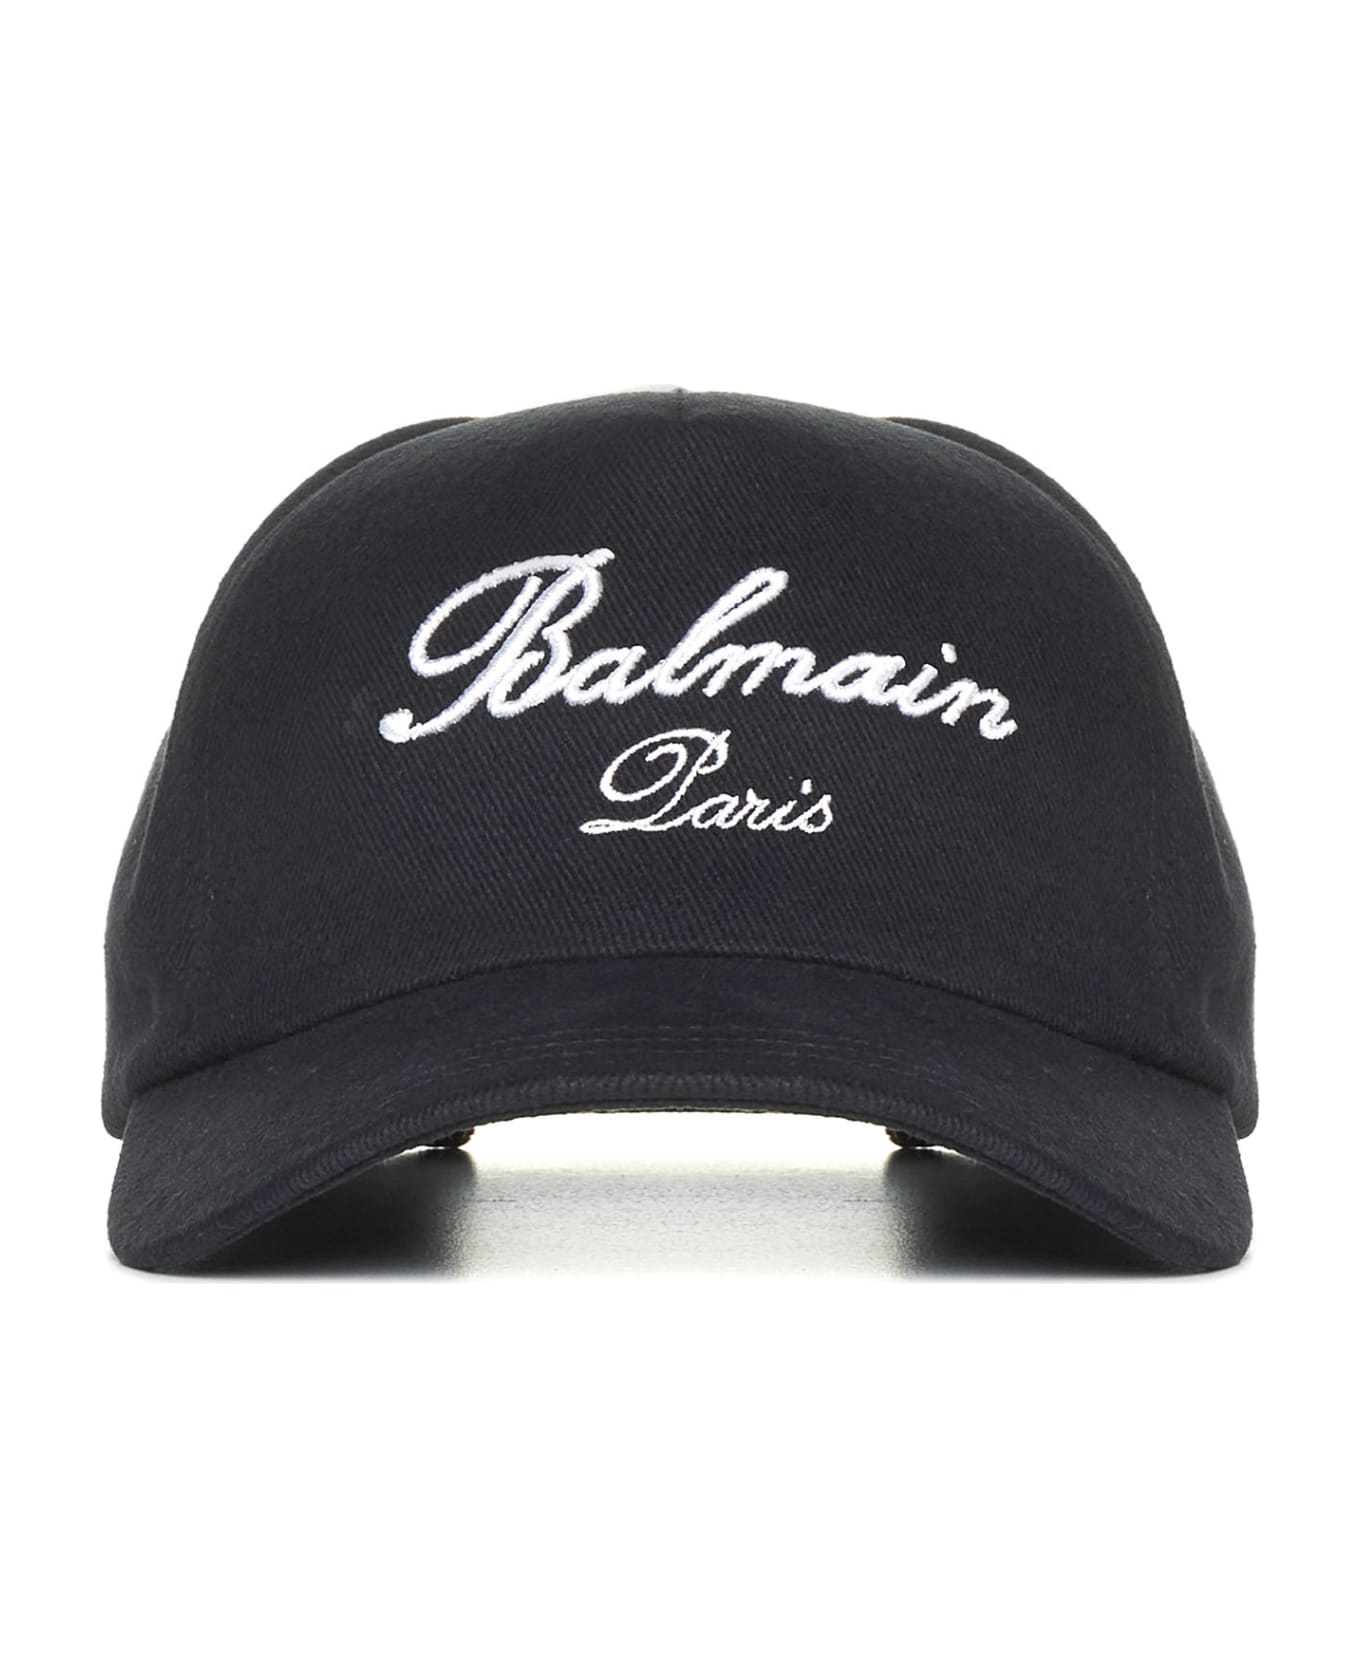 Balmain Black Cotton Hat - Edk Noir Ivoire